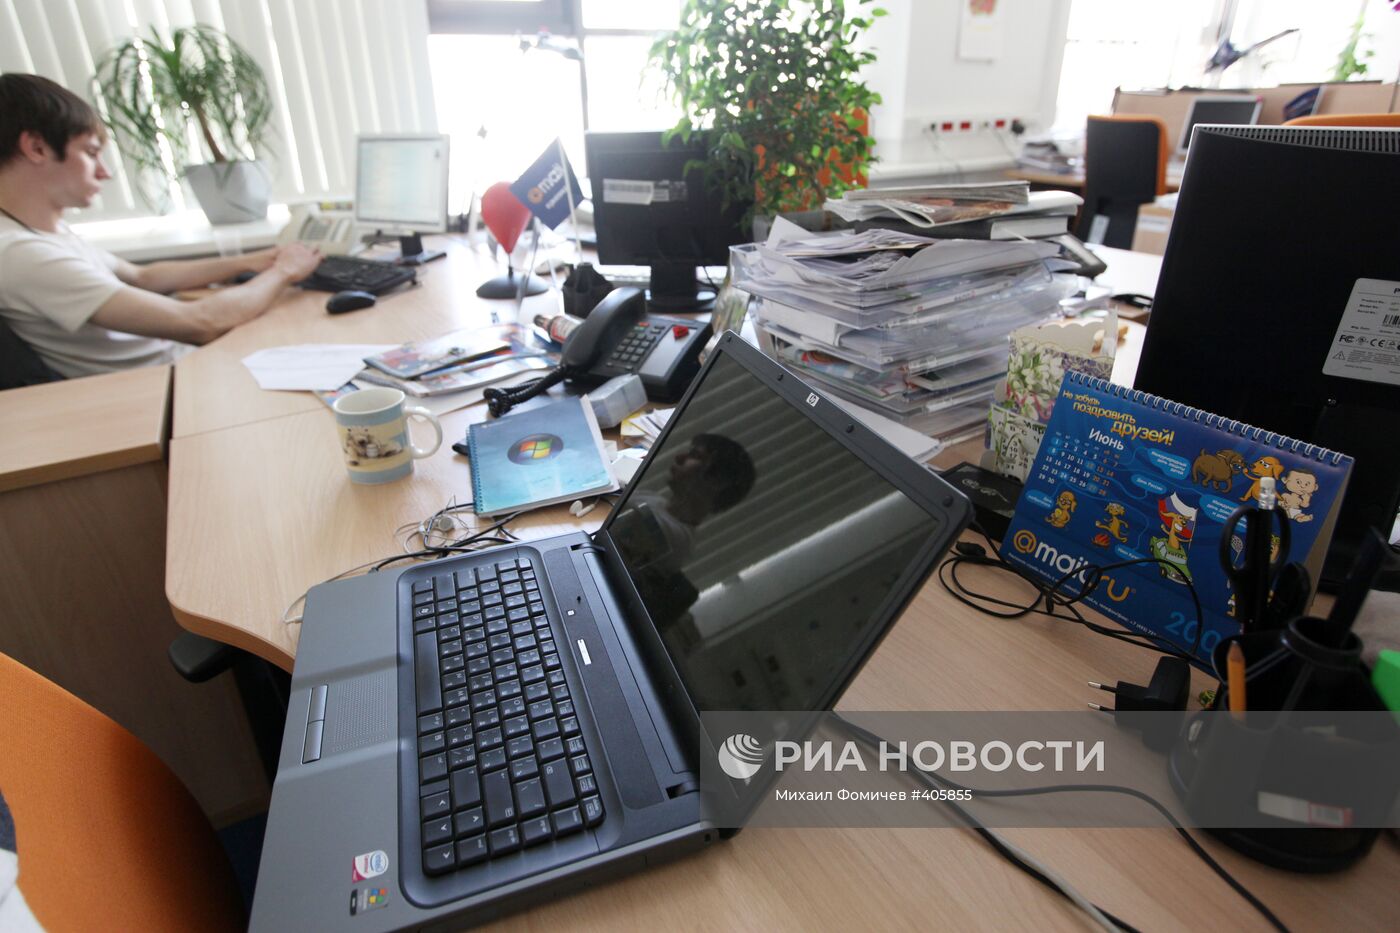 Интернет-компания Mail.Ru